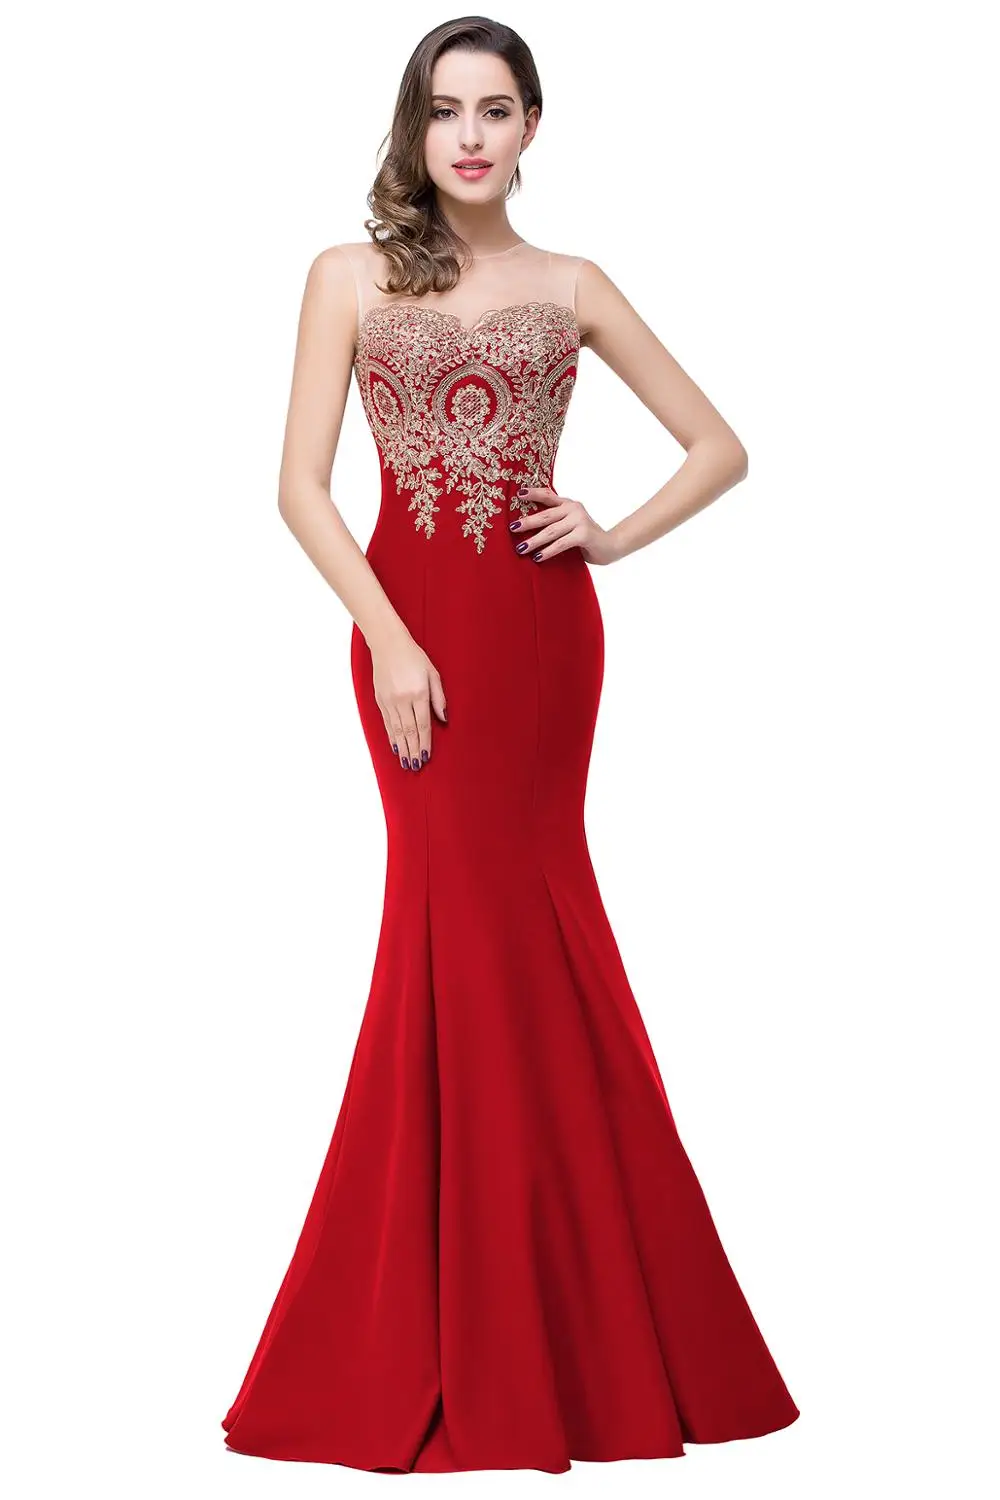 [Окончательная очистка] сумасшедшая цена! Robe De Soiree, длинное вечернее платье русалки красного и розового цвета, вечерние платья, длинное платье на выпускной, 4 стиля